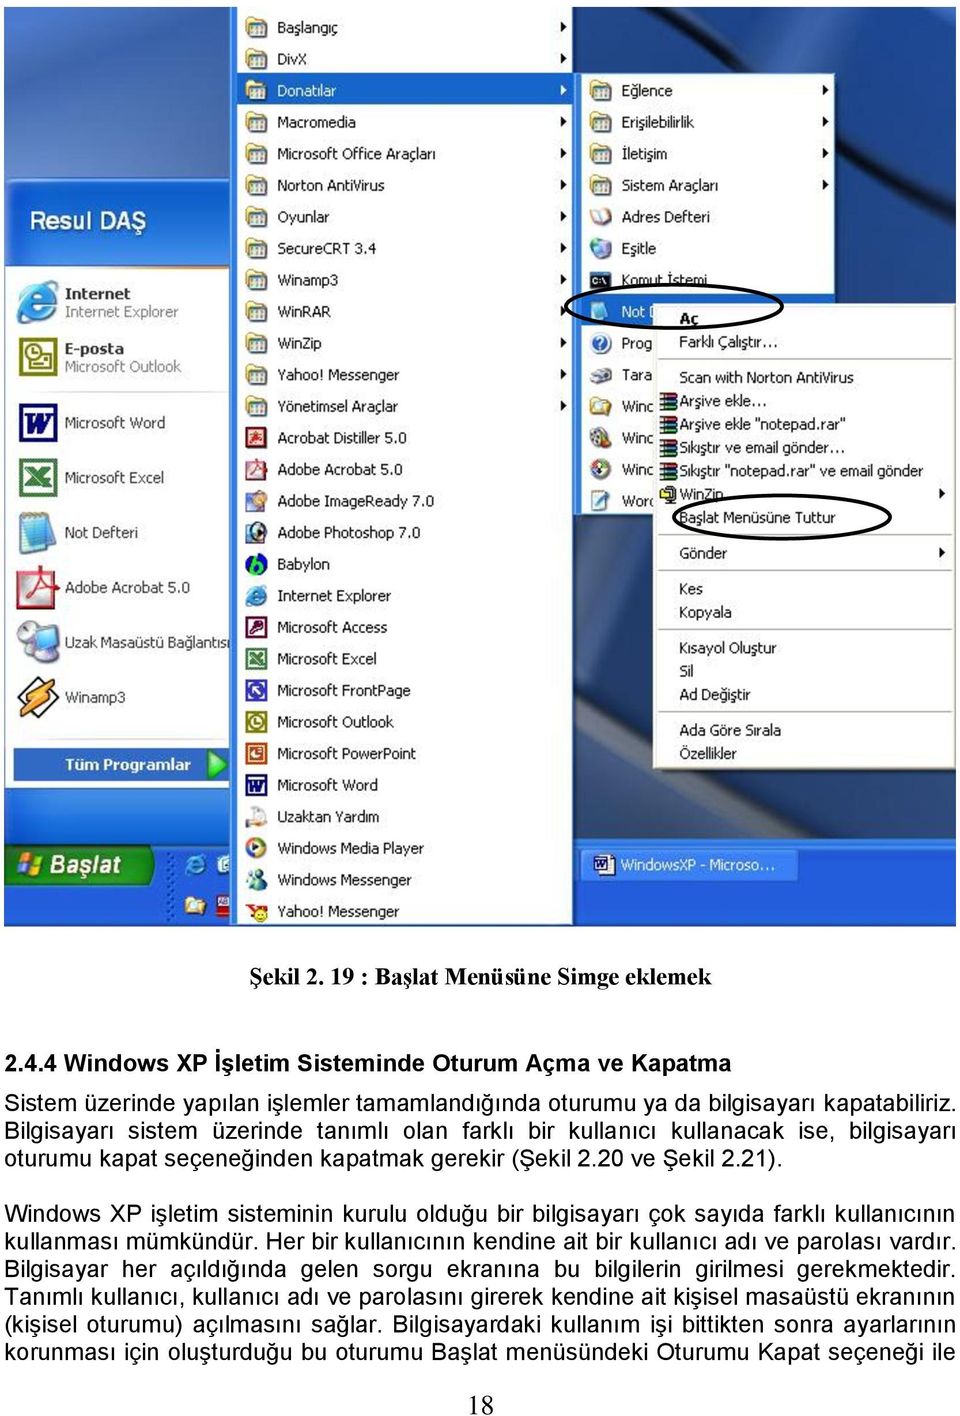 Windows XP iģletim sisteminin kurulu olduğu bir bilgisayarı çok sayıda farklı kullanıcının kullanması mümkündür. Her bir kullanıcının kendine ait bir kullanıcı adı ve parolası vardır.